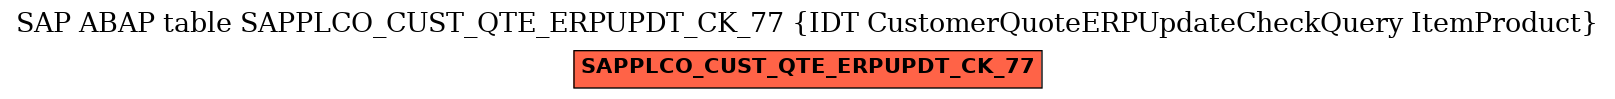 E-R Diagram for table SAPPLCO_CUST_QTE_ERPUPDT_CK_77 (IDT CustomerQuoteERPUpdateCheckQuery ItemProduct)